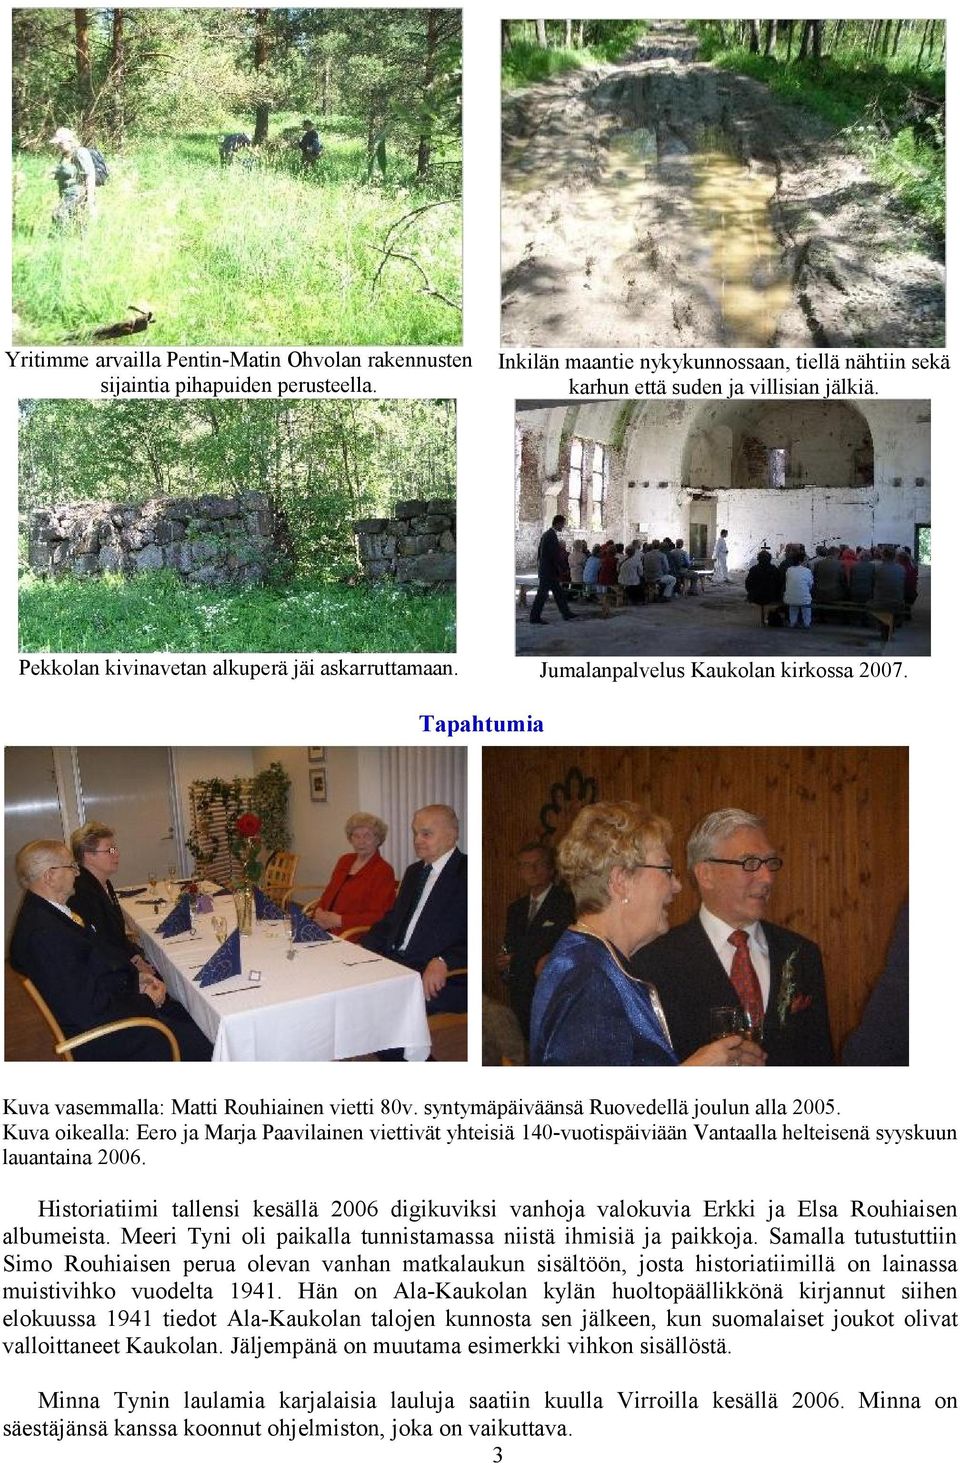 Kuva oikealla: Eero ja Marja Paavilainen viettivät yhteisiä 140-vuotispäiviään Vantaalla helteisenä syyskuun lauantaina 2006.